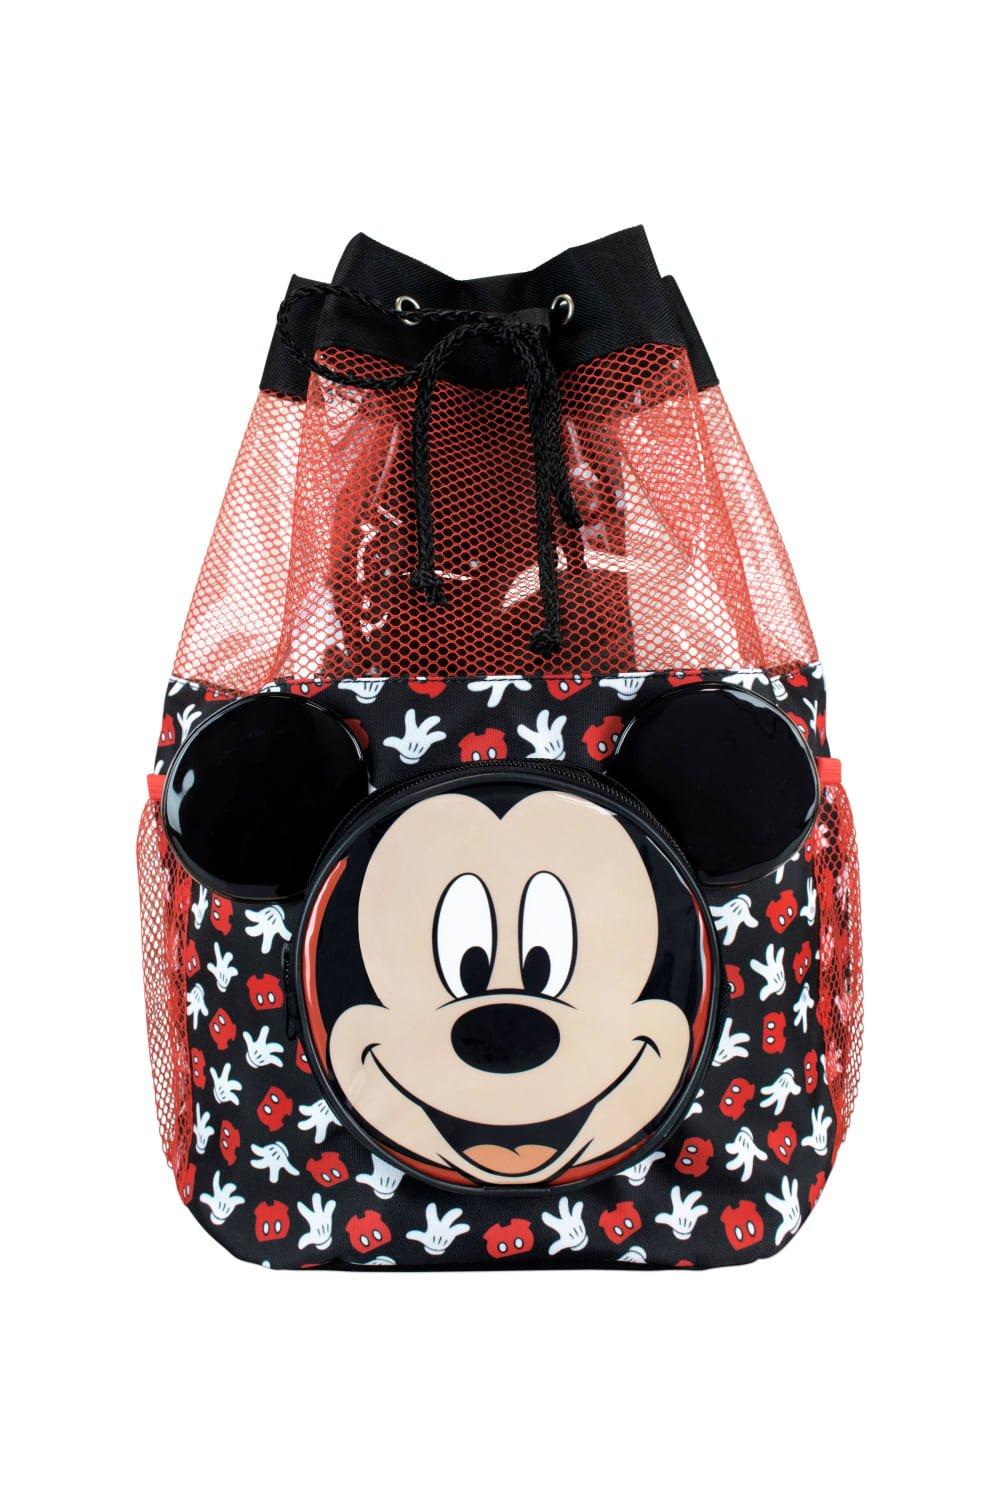 Сумка для плавания с Микки Маусом Disney, черный женский холщовый рюкзак на плечо с микки маусом студенческий школьный рюкзак на молнии дорожный мини рюкзак 2019